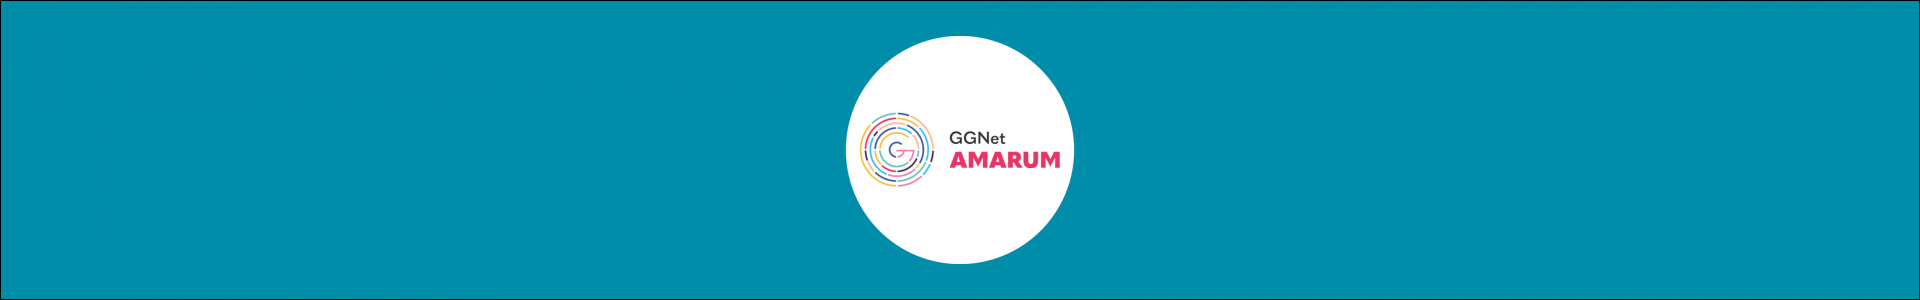 GGNet Amarum